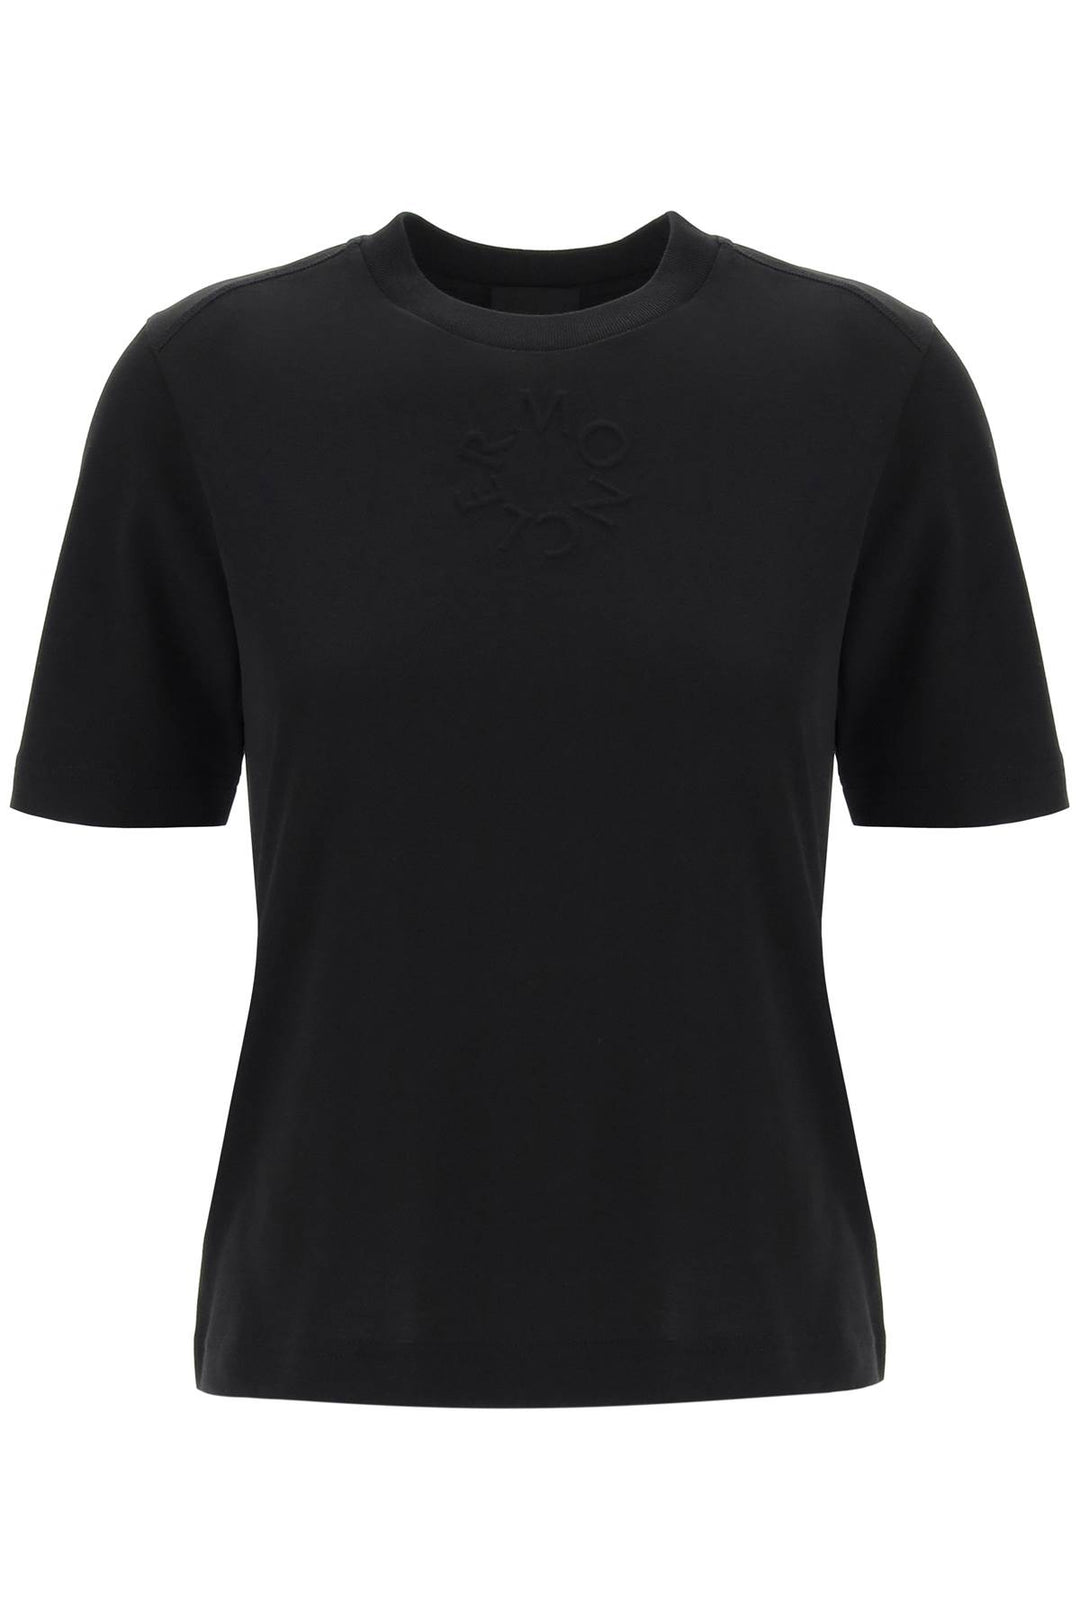 Moncler Embossed Logo T Shirt   Nero